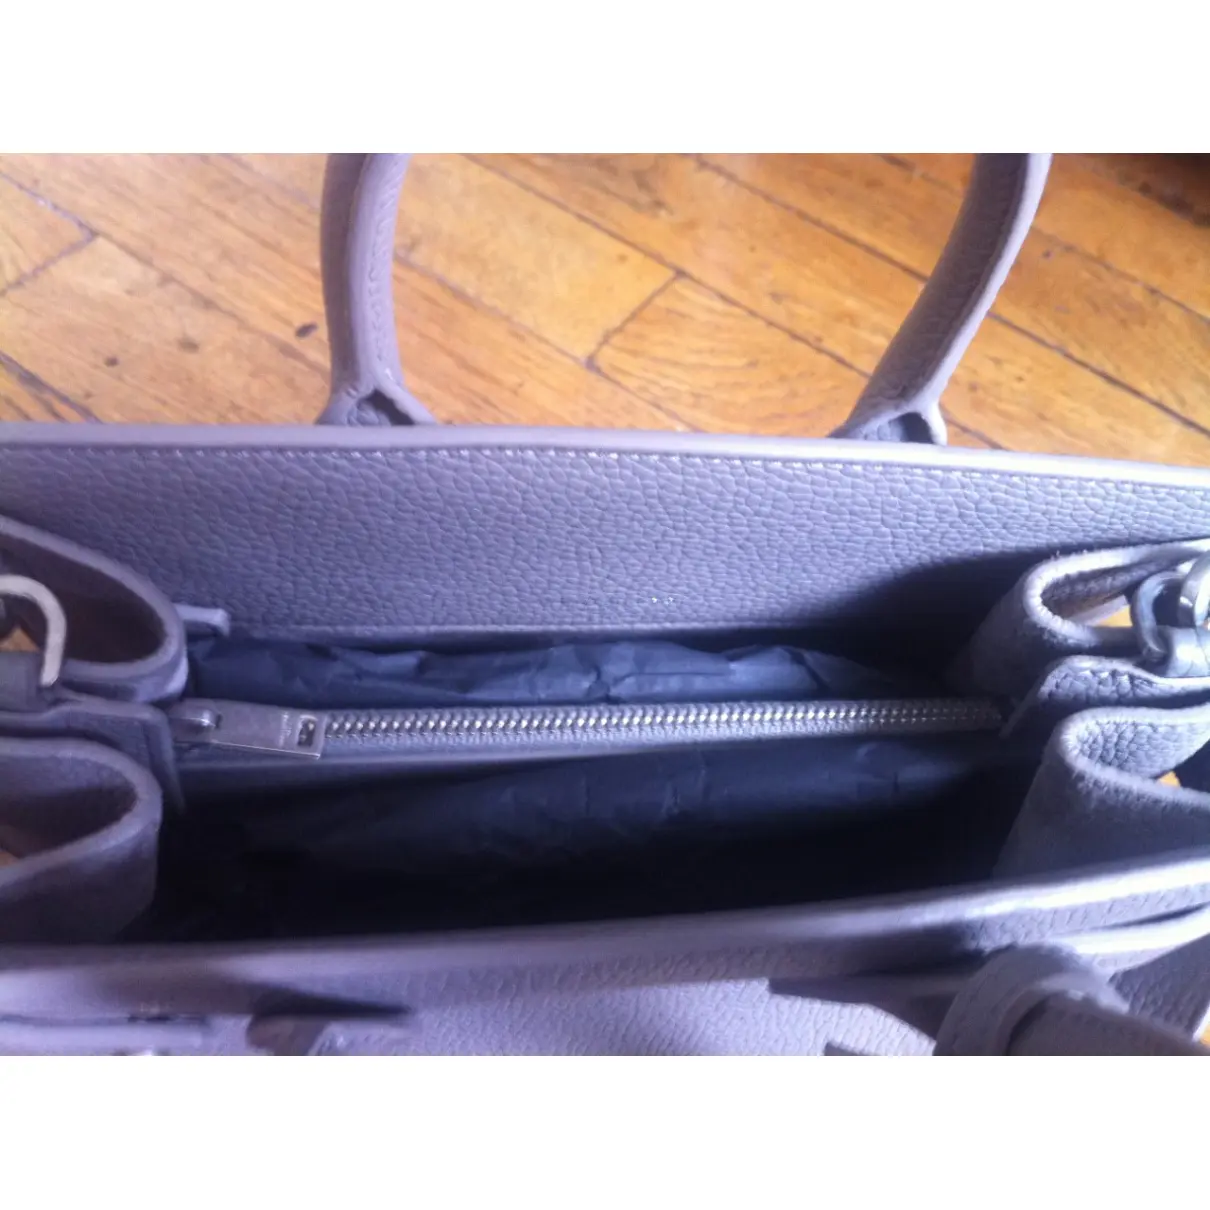 Sac de Jour leather handbag Saint Laurent